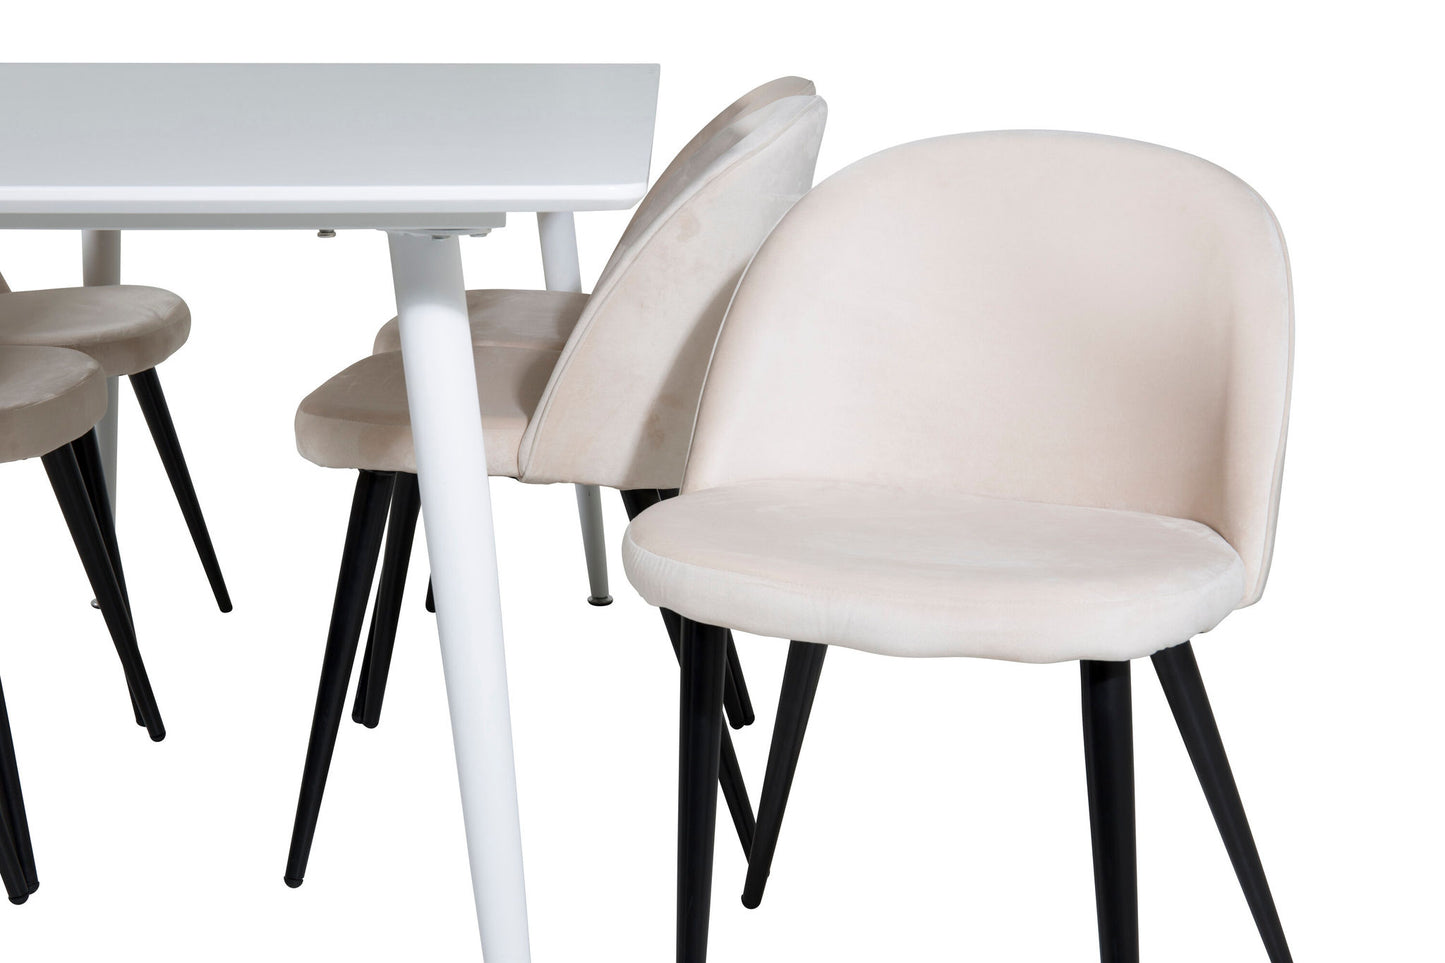 Polar Spisebord 180 cm - Hvid top / Hvide ben+ velour Spisebordsstol - Beige / Sort